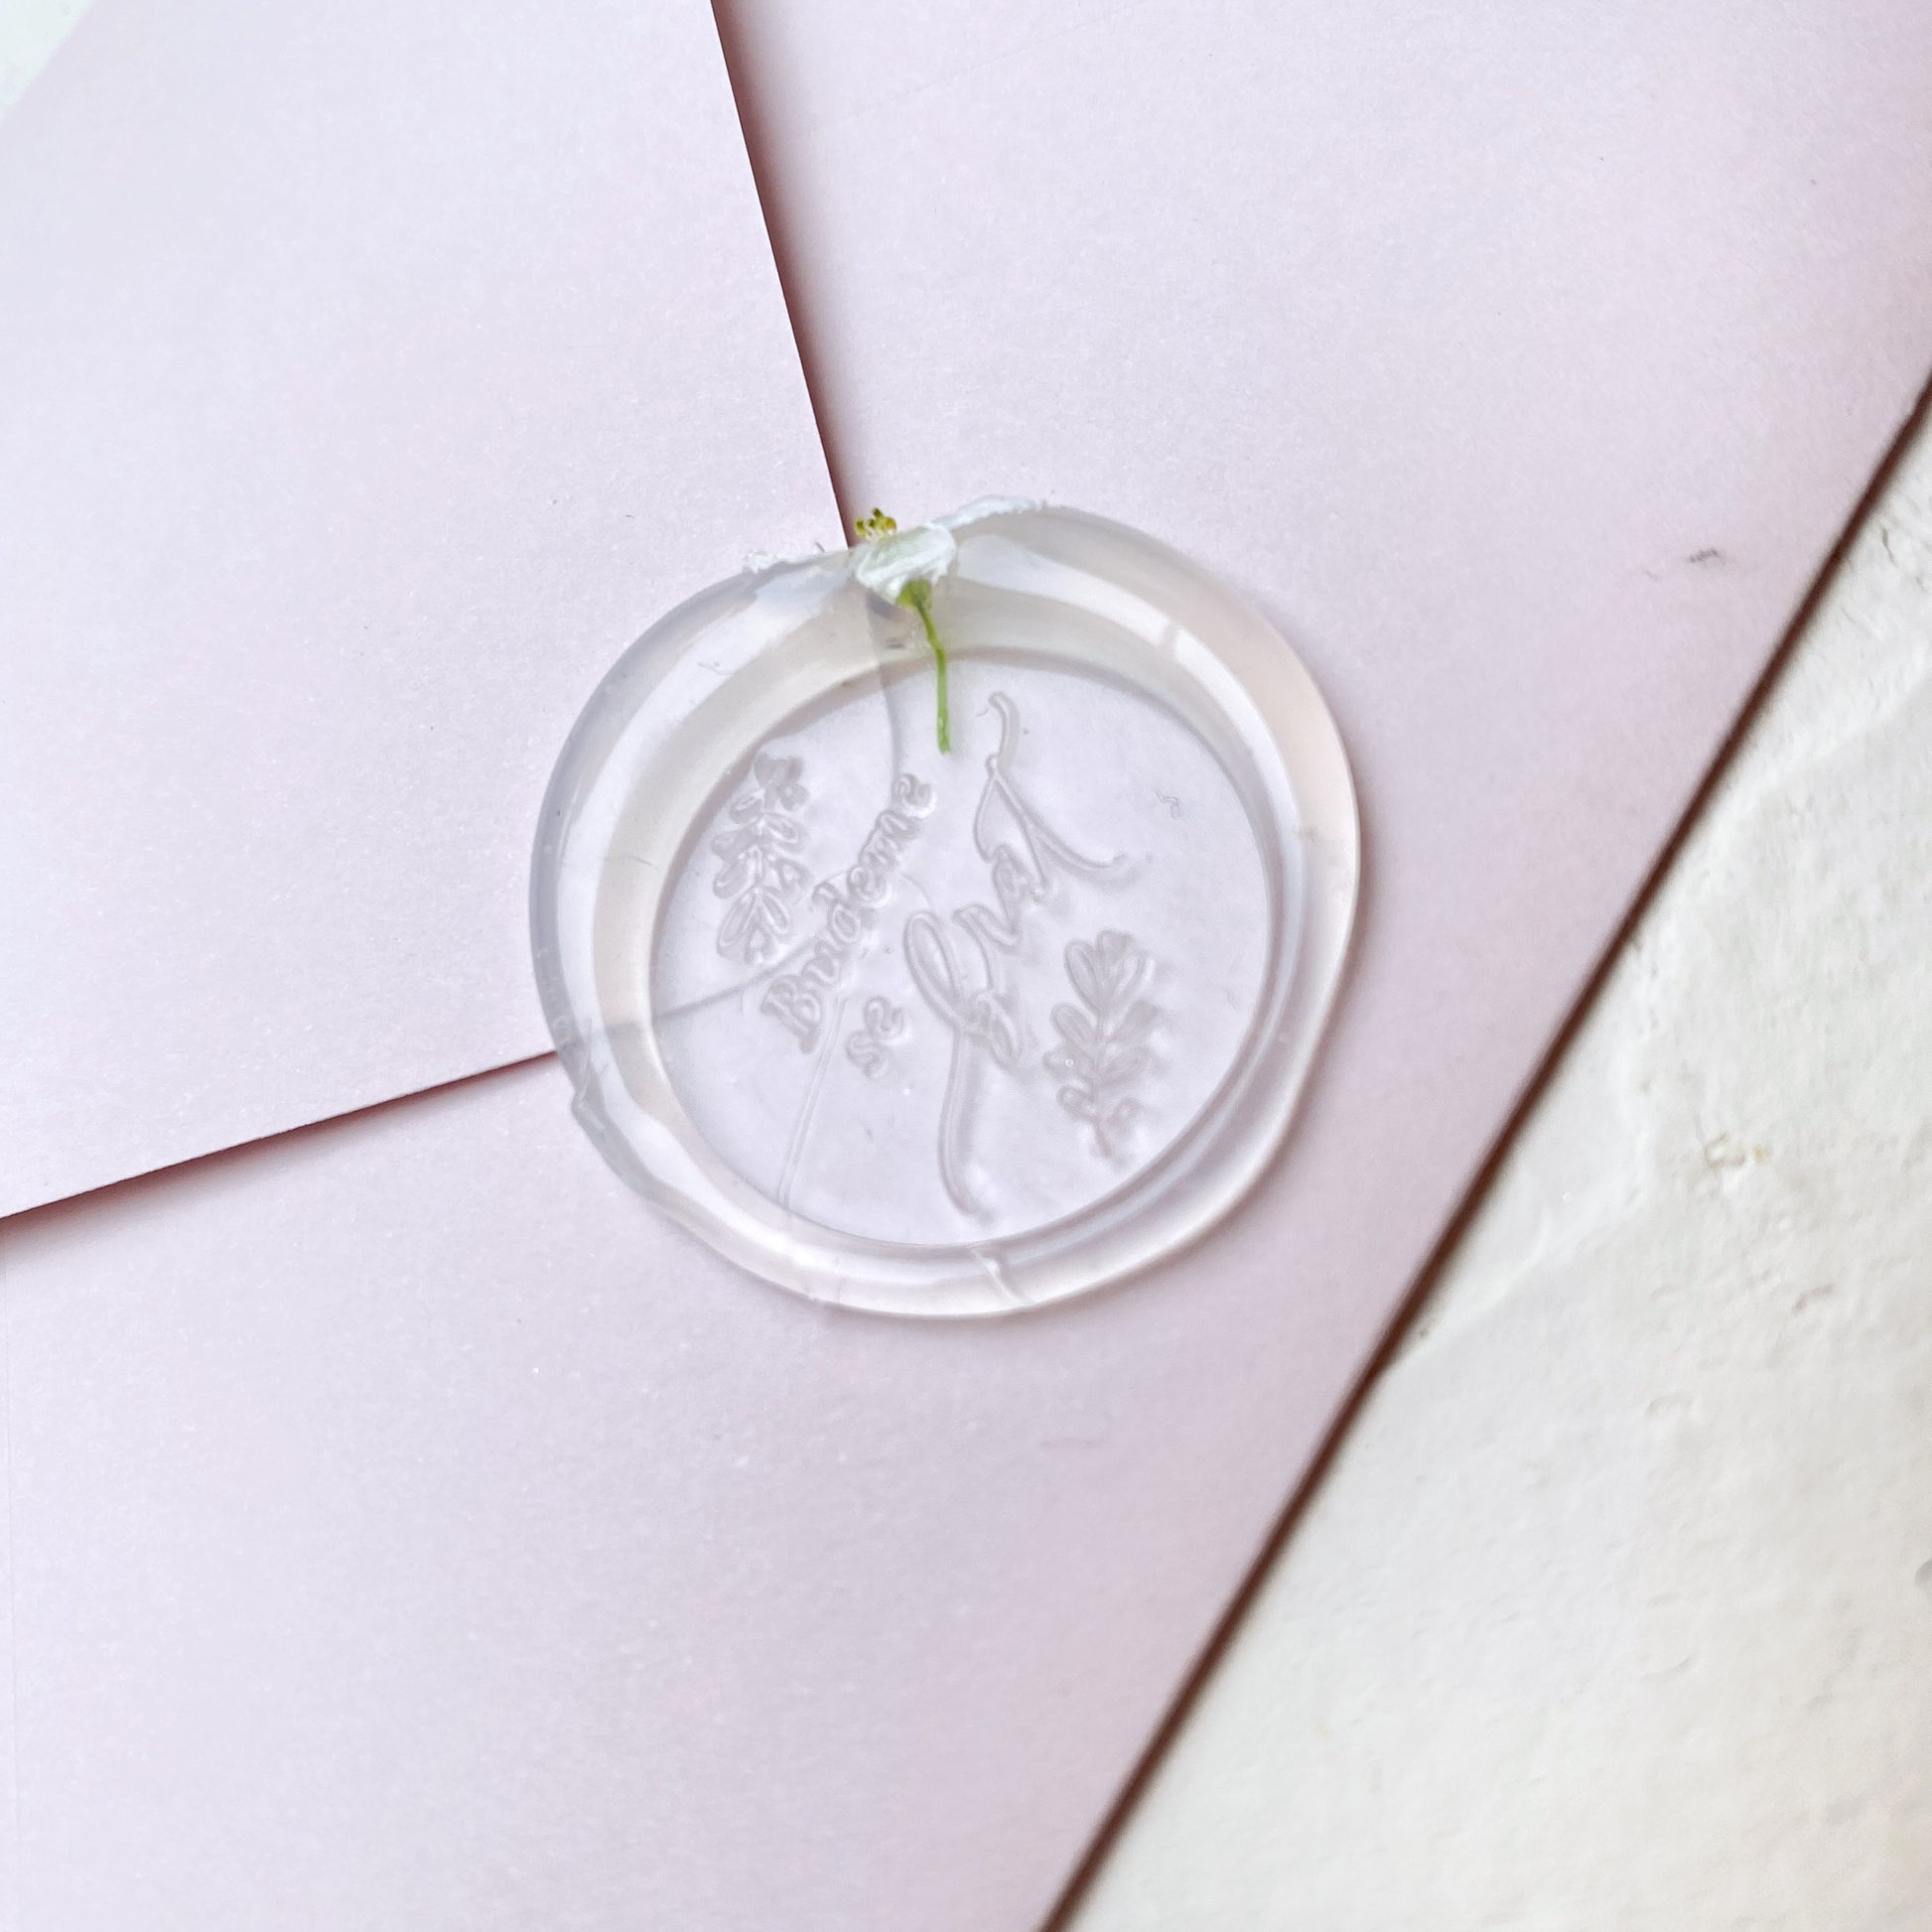 Průhledná svatební pečeť s květinou a textem "budeme se brát" na růžové obálce a bílém podkladu detail z profilu